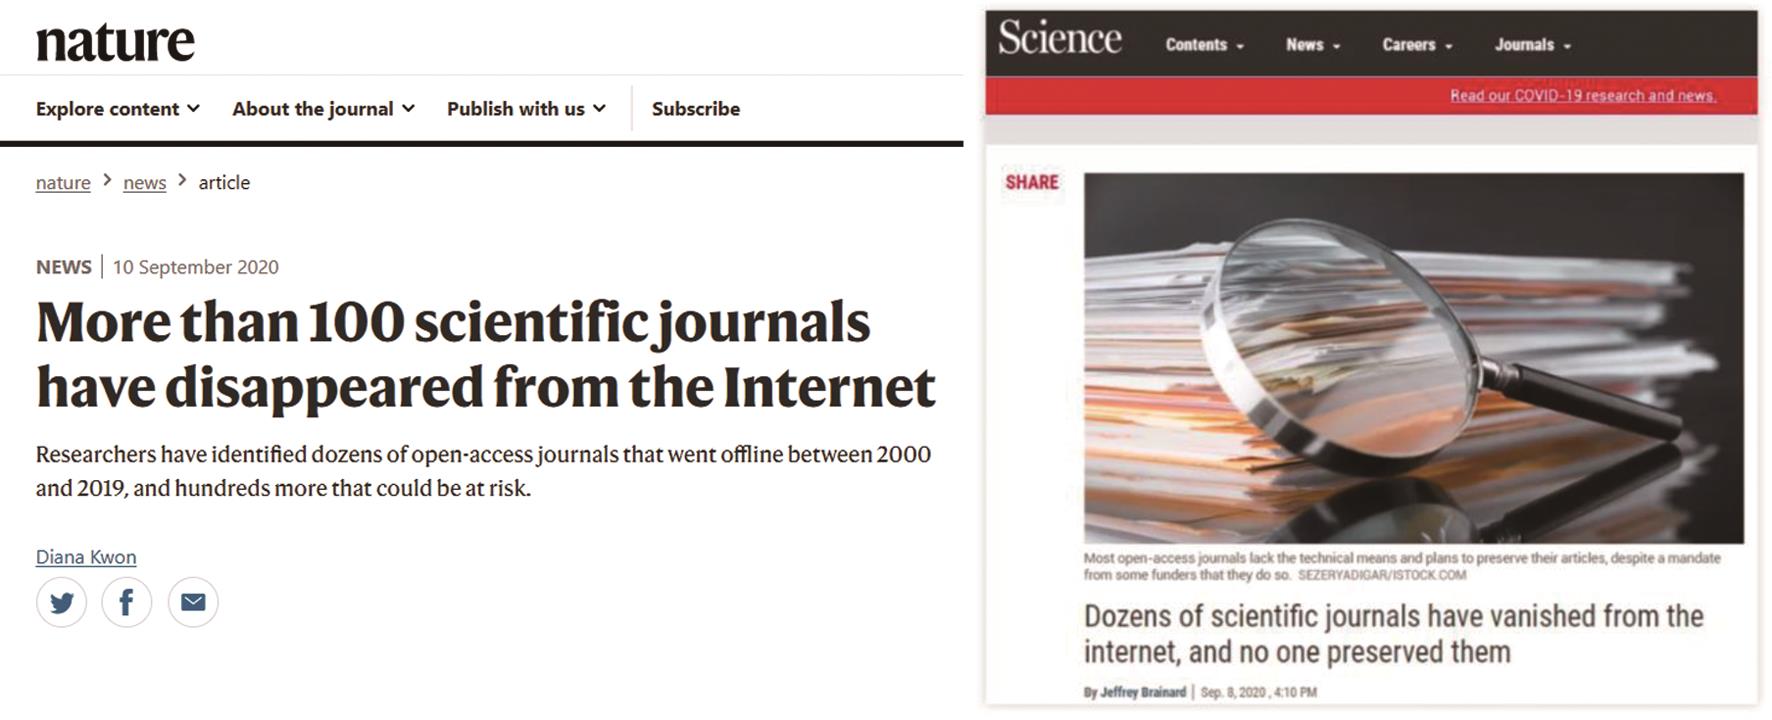 《自然》（左）与《科学》（右）杂志相继发表文章称大量科学期刊已从互联网上消失。